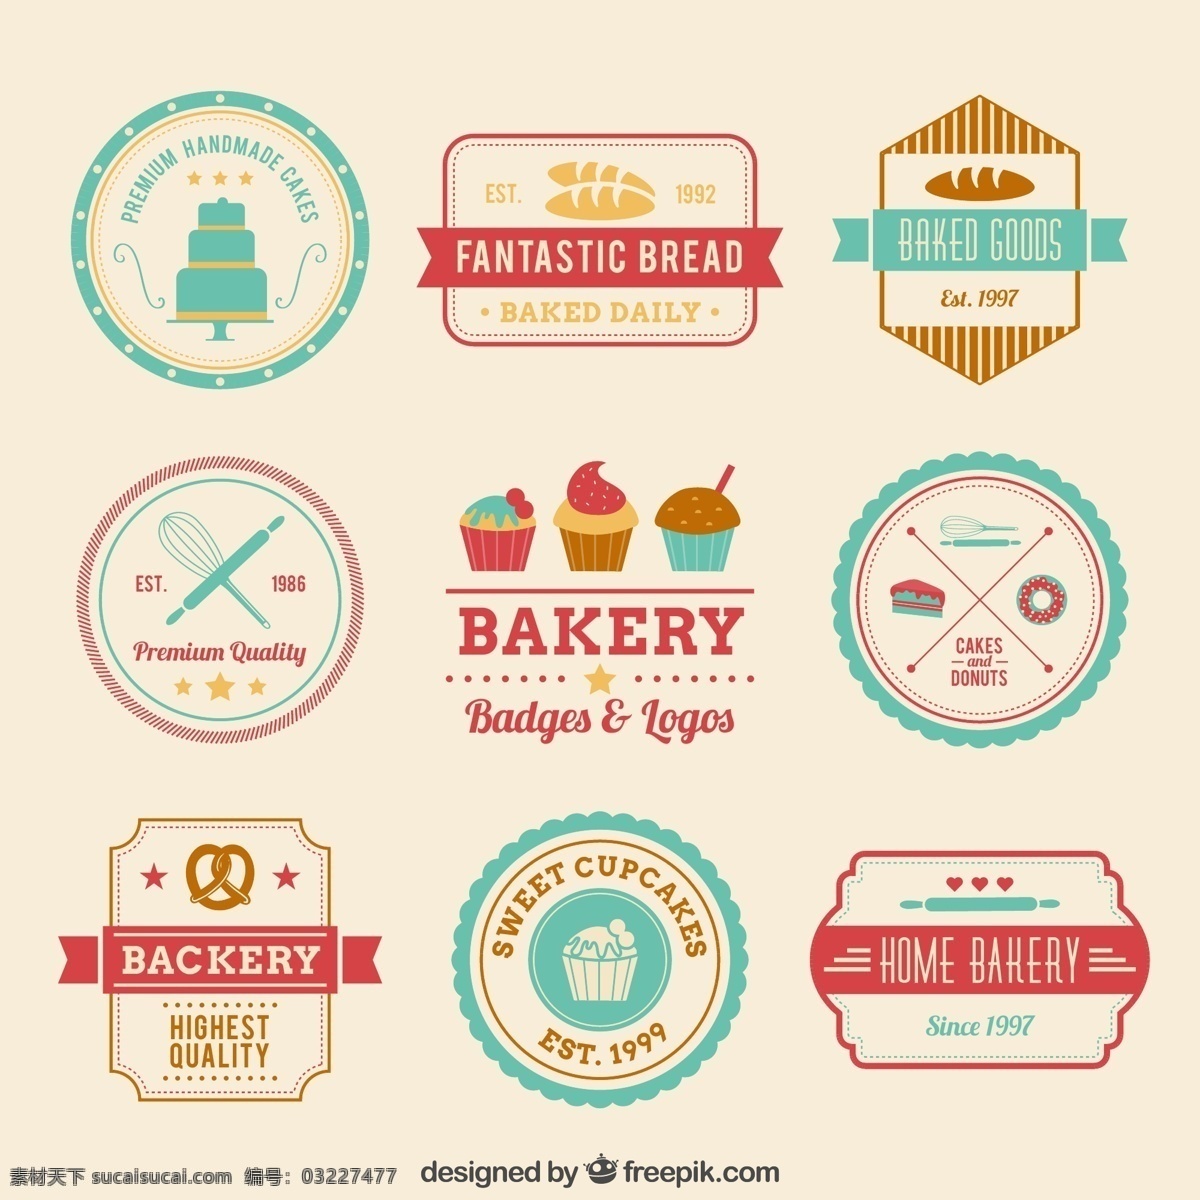 彩色 烘 培 食品 标签 矢量图 烘培 手工制作 烘培食品 纸杯蛋糕 面包